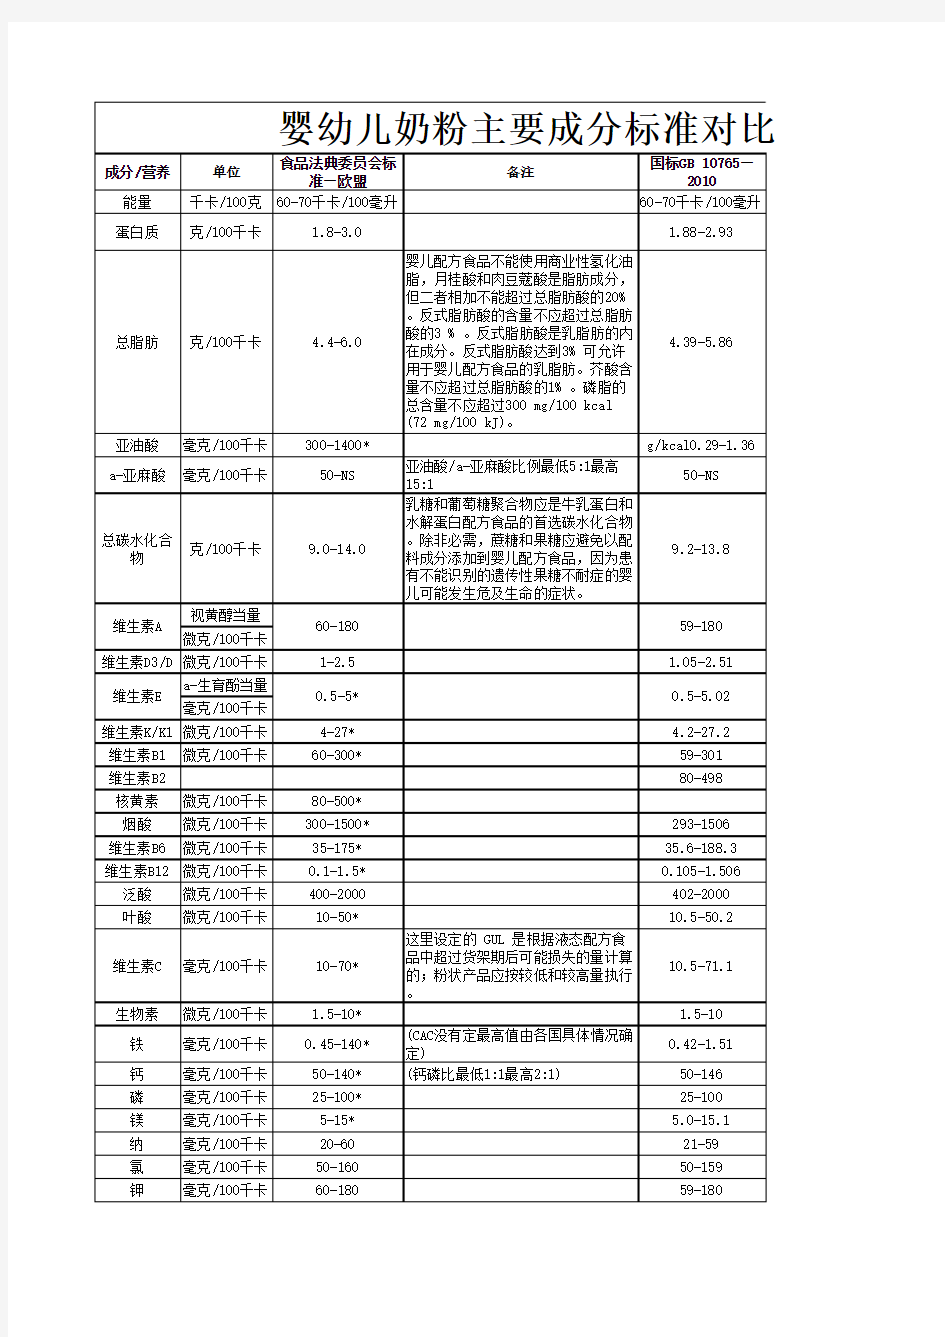 中国婴幼儿配方奶粉标准与欧盟标准比较 表 